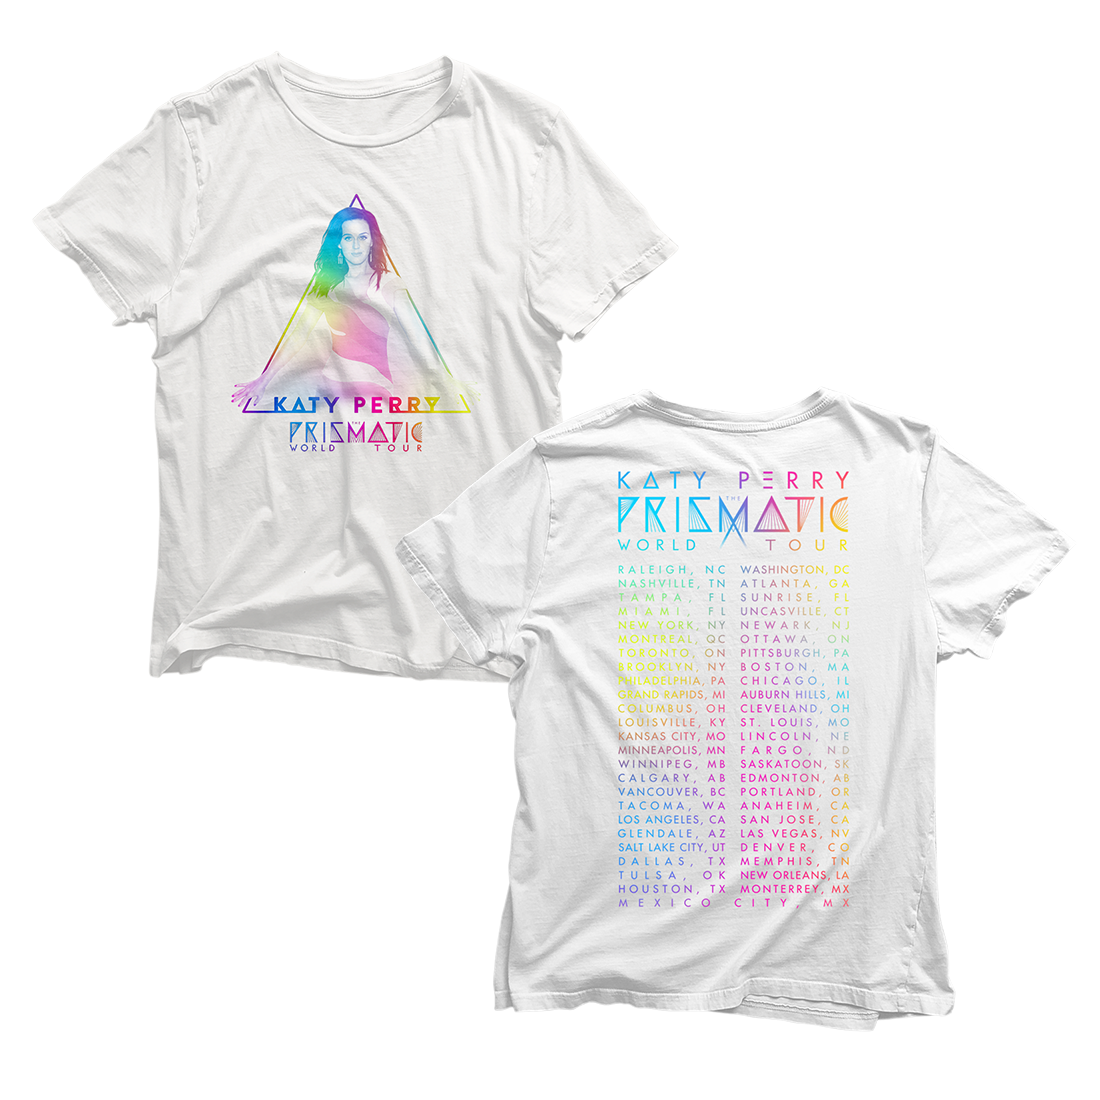 Prismatic Tour T-Shirt